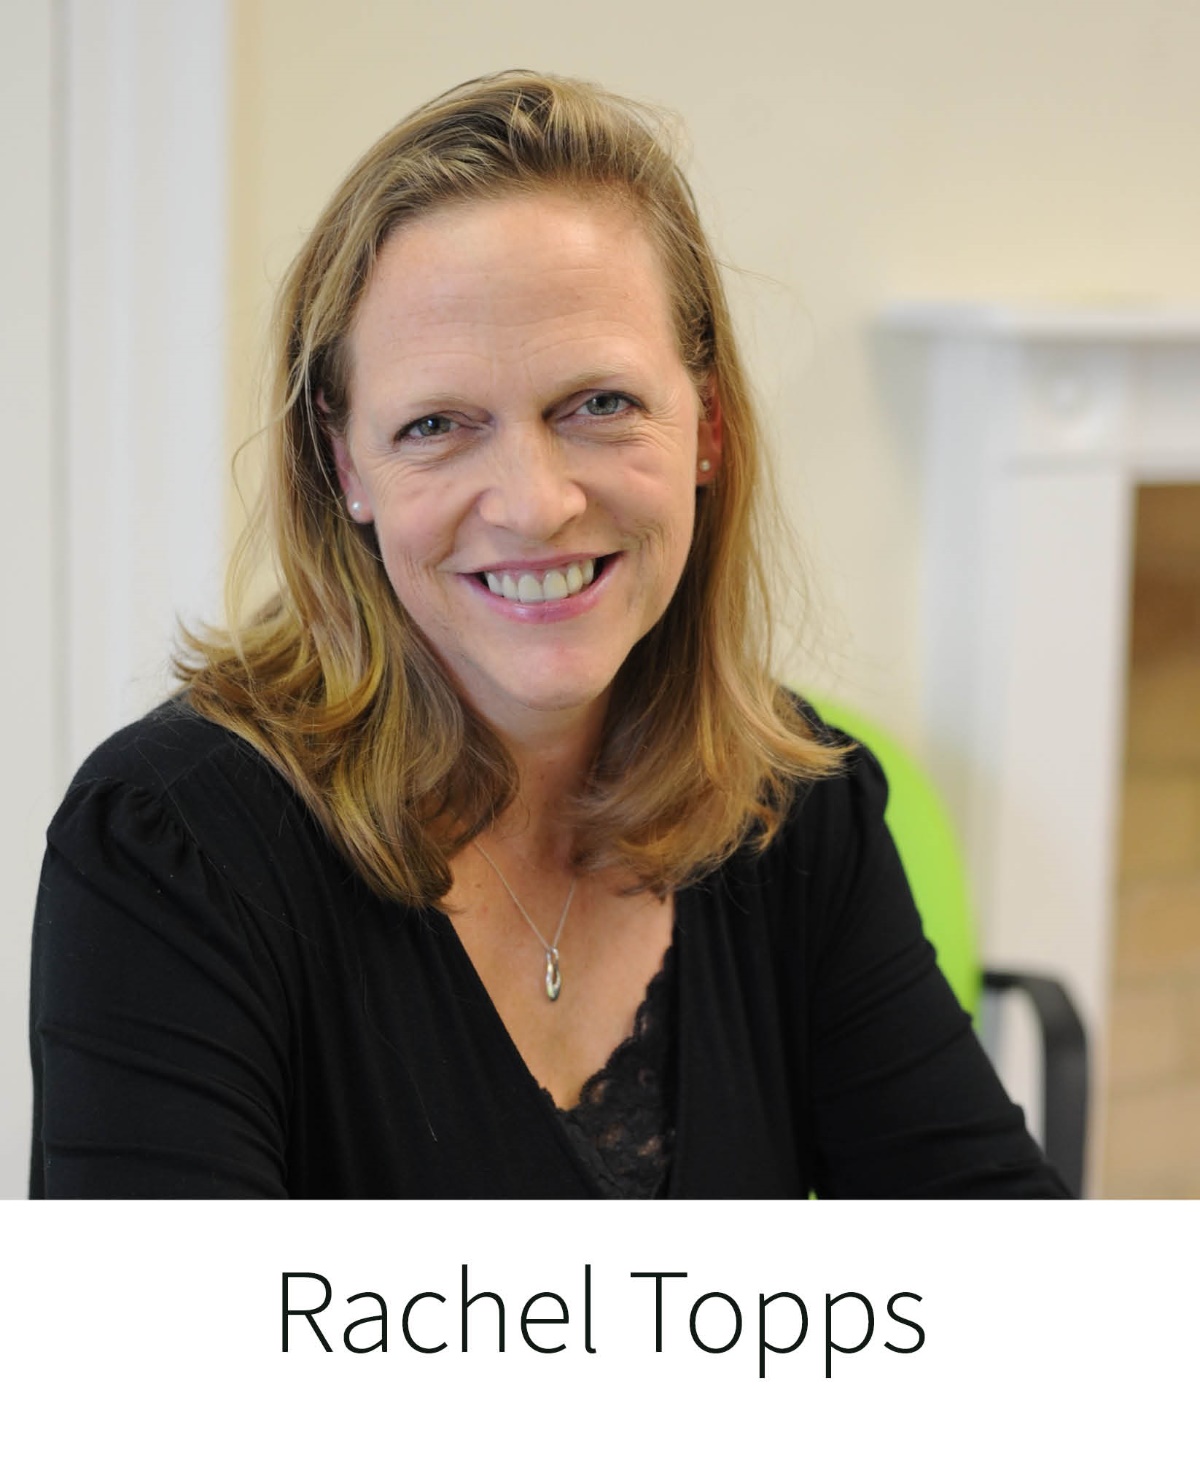 Rachel Topps